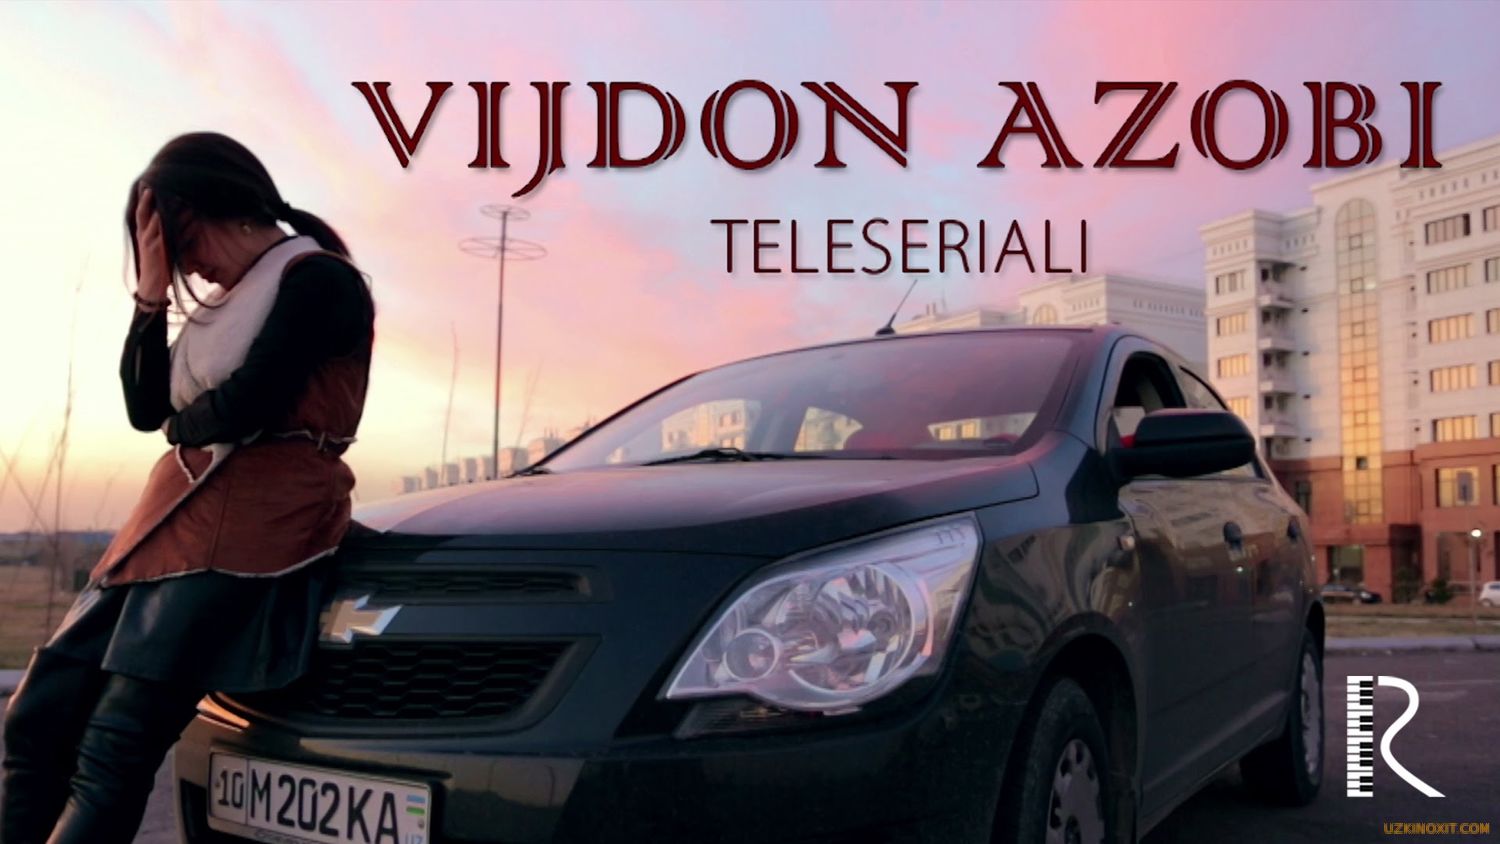 Vijdon azobi 1-40 Qism (Yangi uzbek serial 2016)